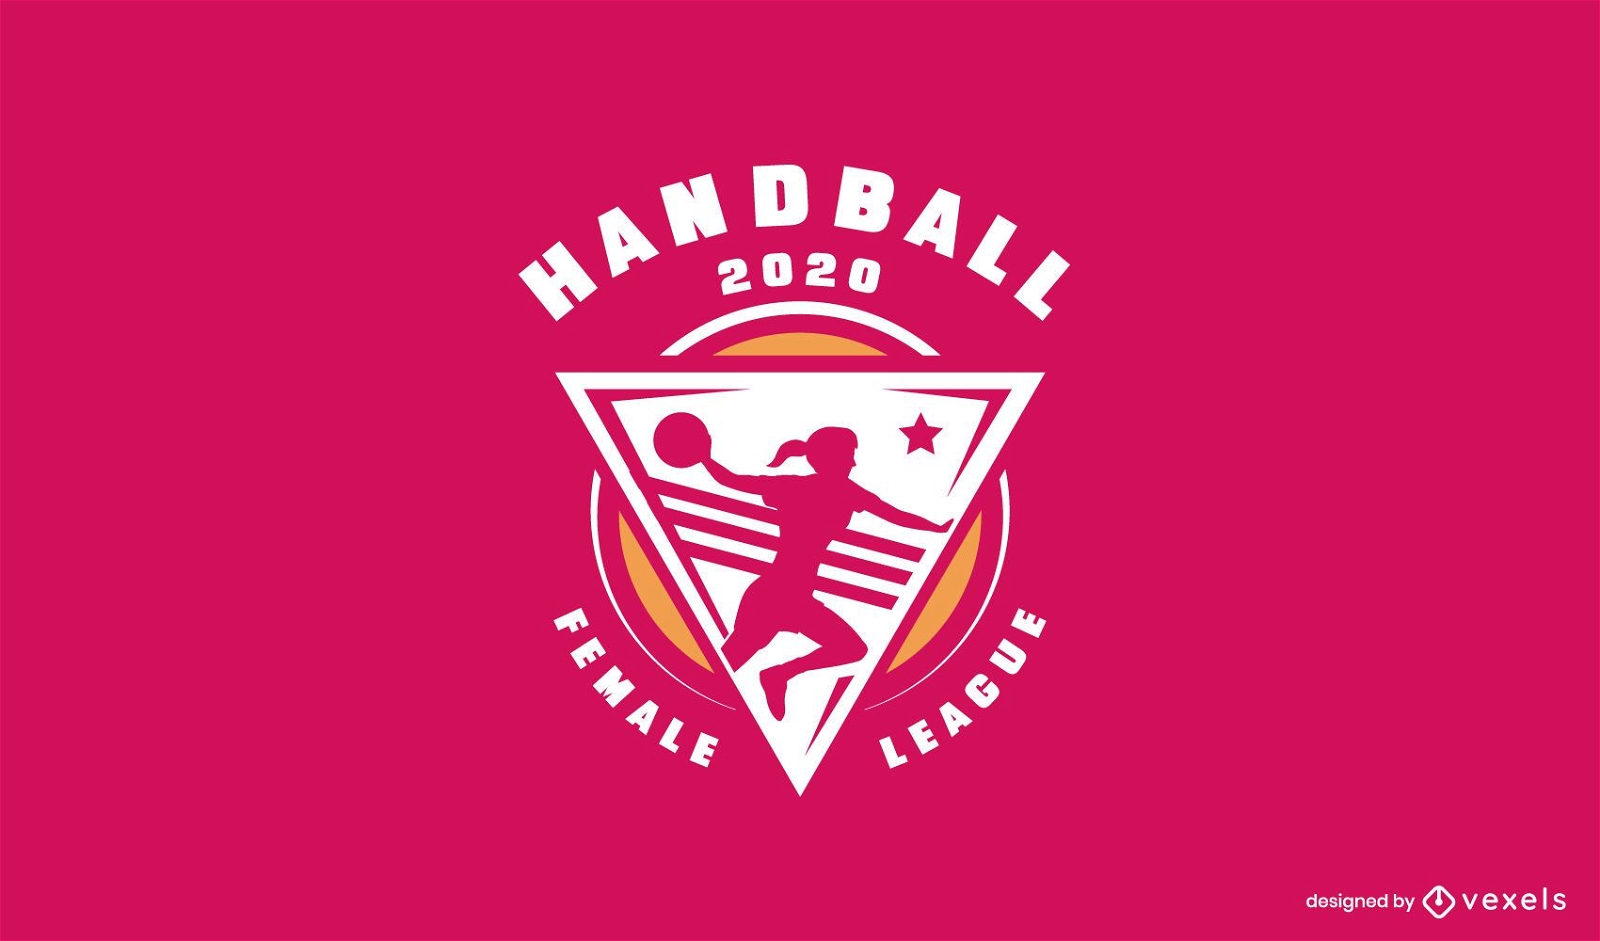 Plantilla de logotipo de liga femenina de balonmano